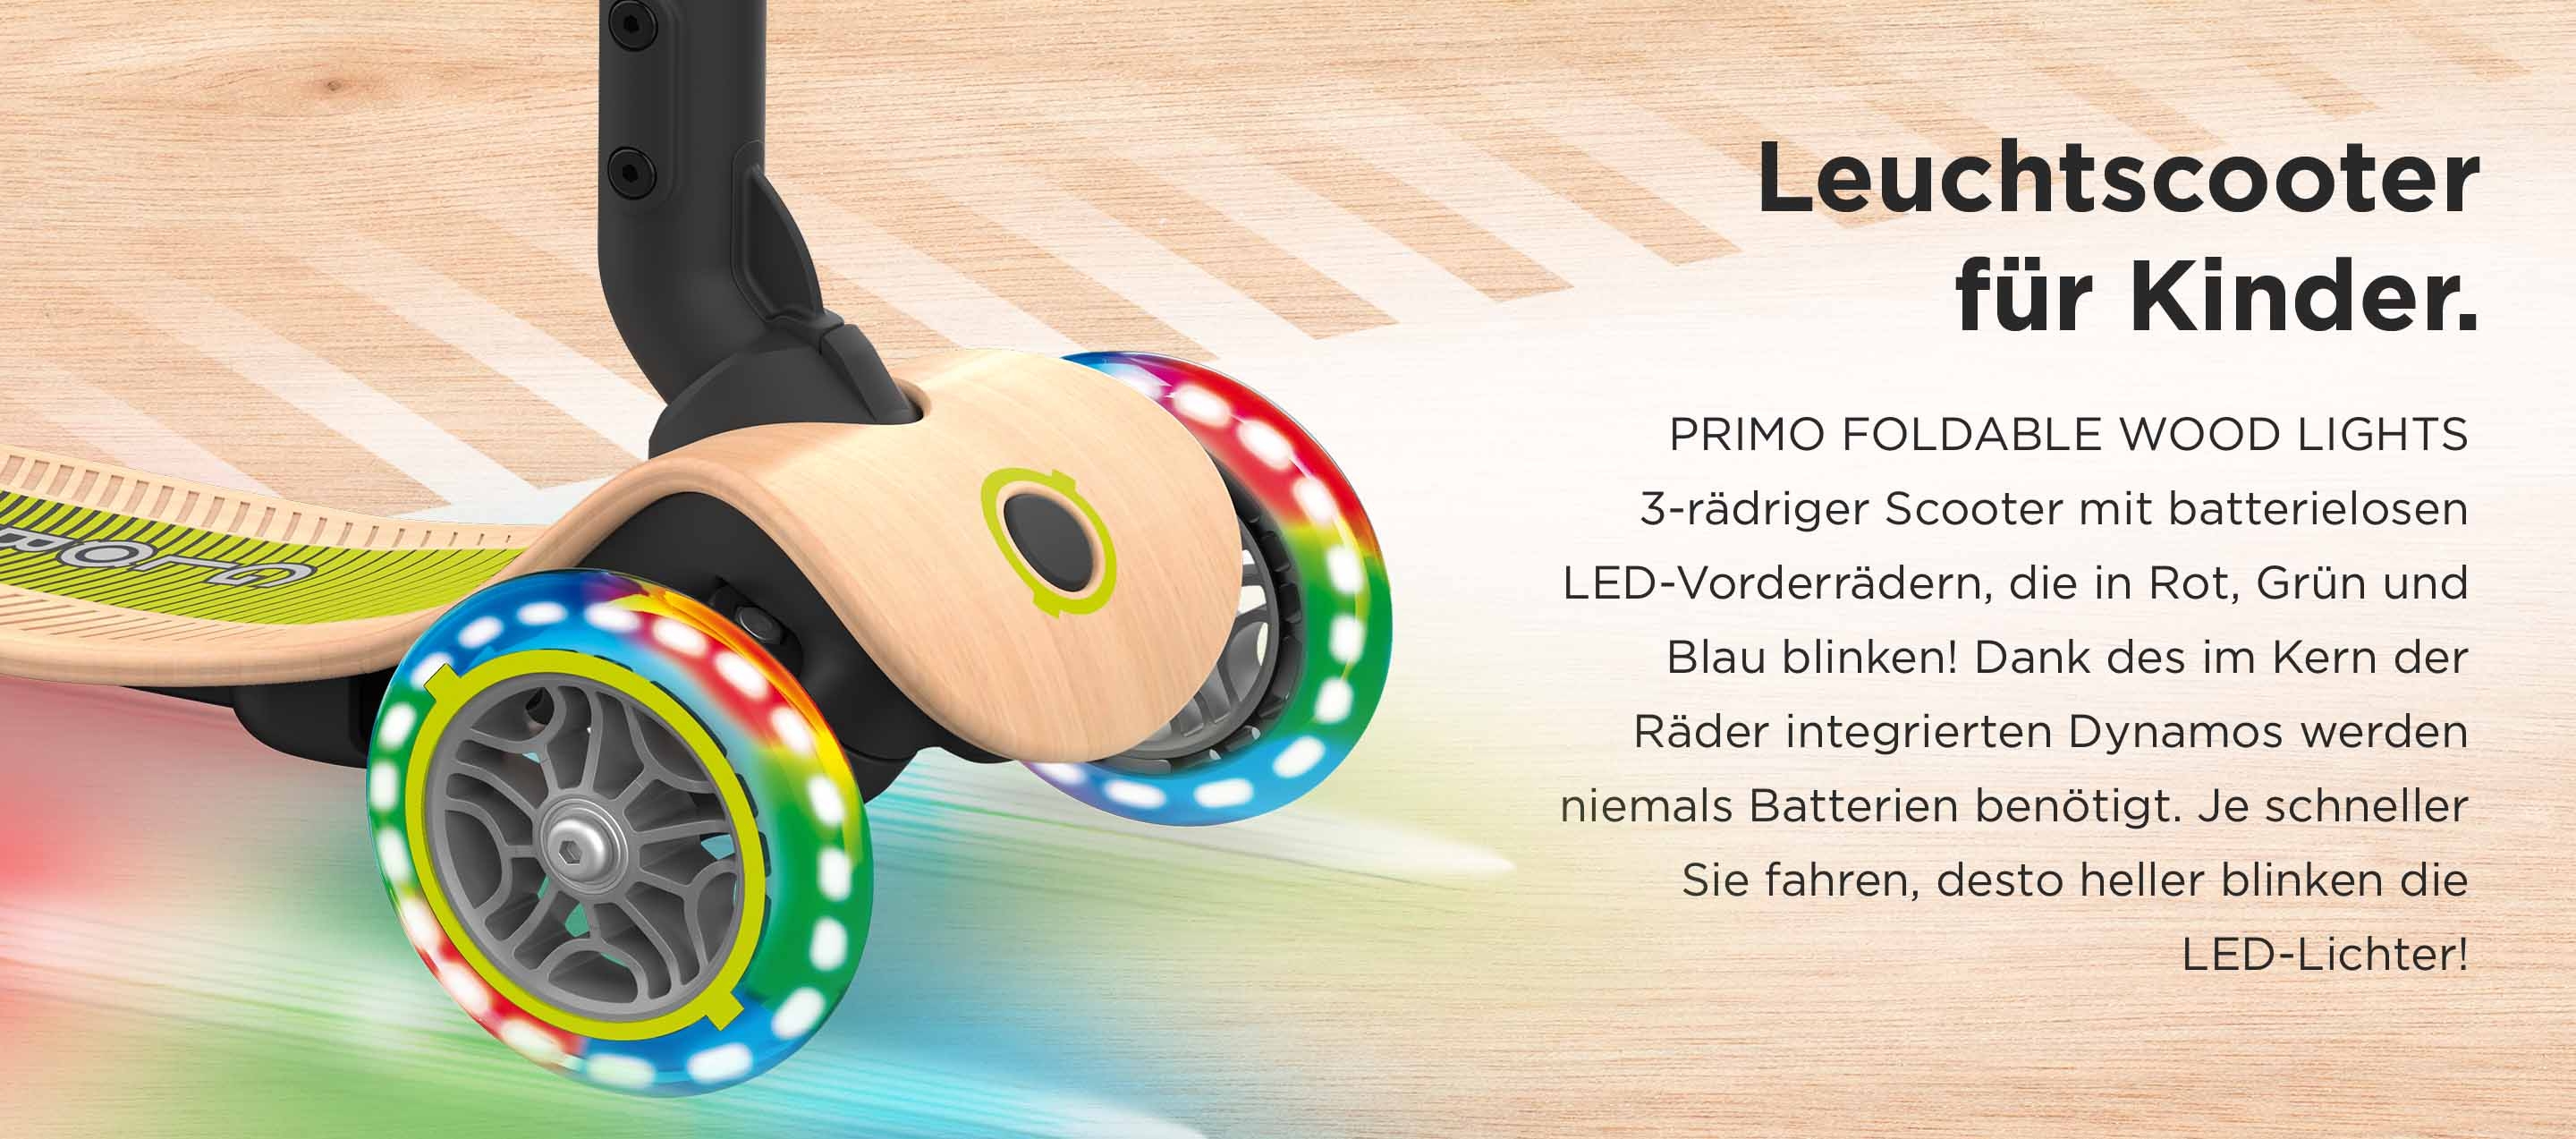 Leuchtscooter für Kinder. PRIMO FOLDABLE WOOD LIGHTS 3-rädriger Scooter mit batterielosen LED-Vorderrädern, die in Rot, Grün und Blau blinken! Dank des im Kern der Räder integrierten Dynamos werden niemals Batterien benötigt. Je schneller Sie fahren, desto heller blinken die LED-Lichter!